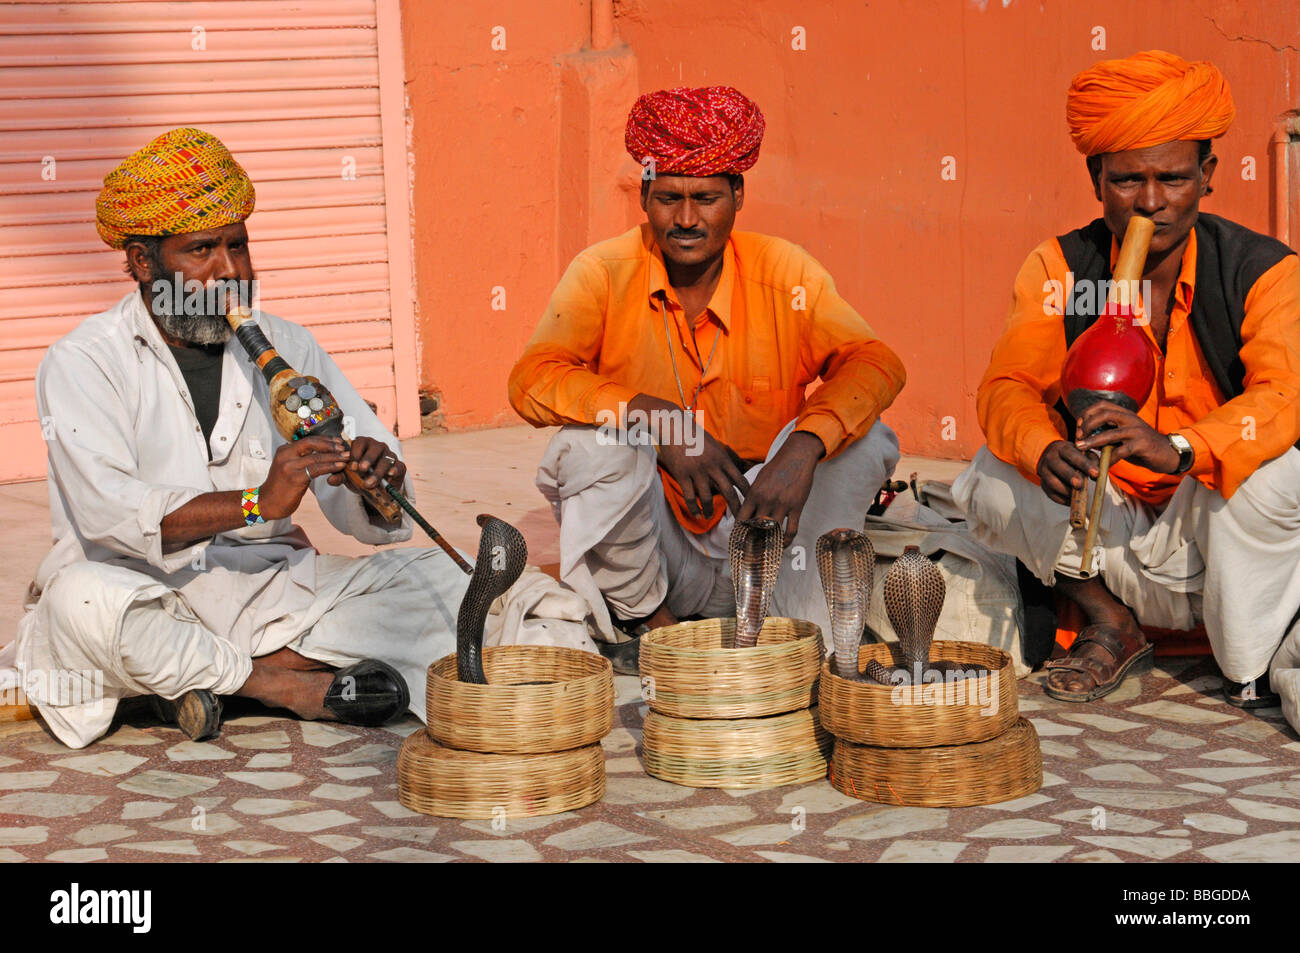 Les charmeurs de serpent indien avec les cobras (Naja naja), le palais des vents, Jaipur, Rajasthan, Inde du nord, l'Asie Banque D'Images